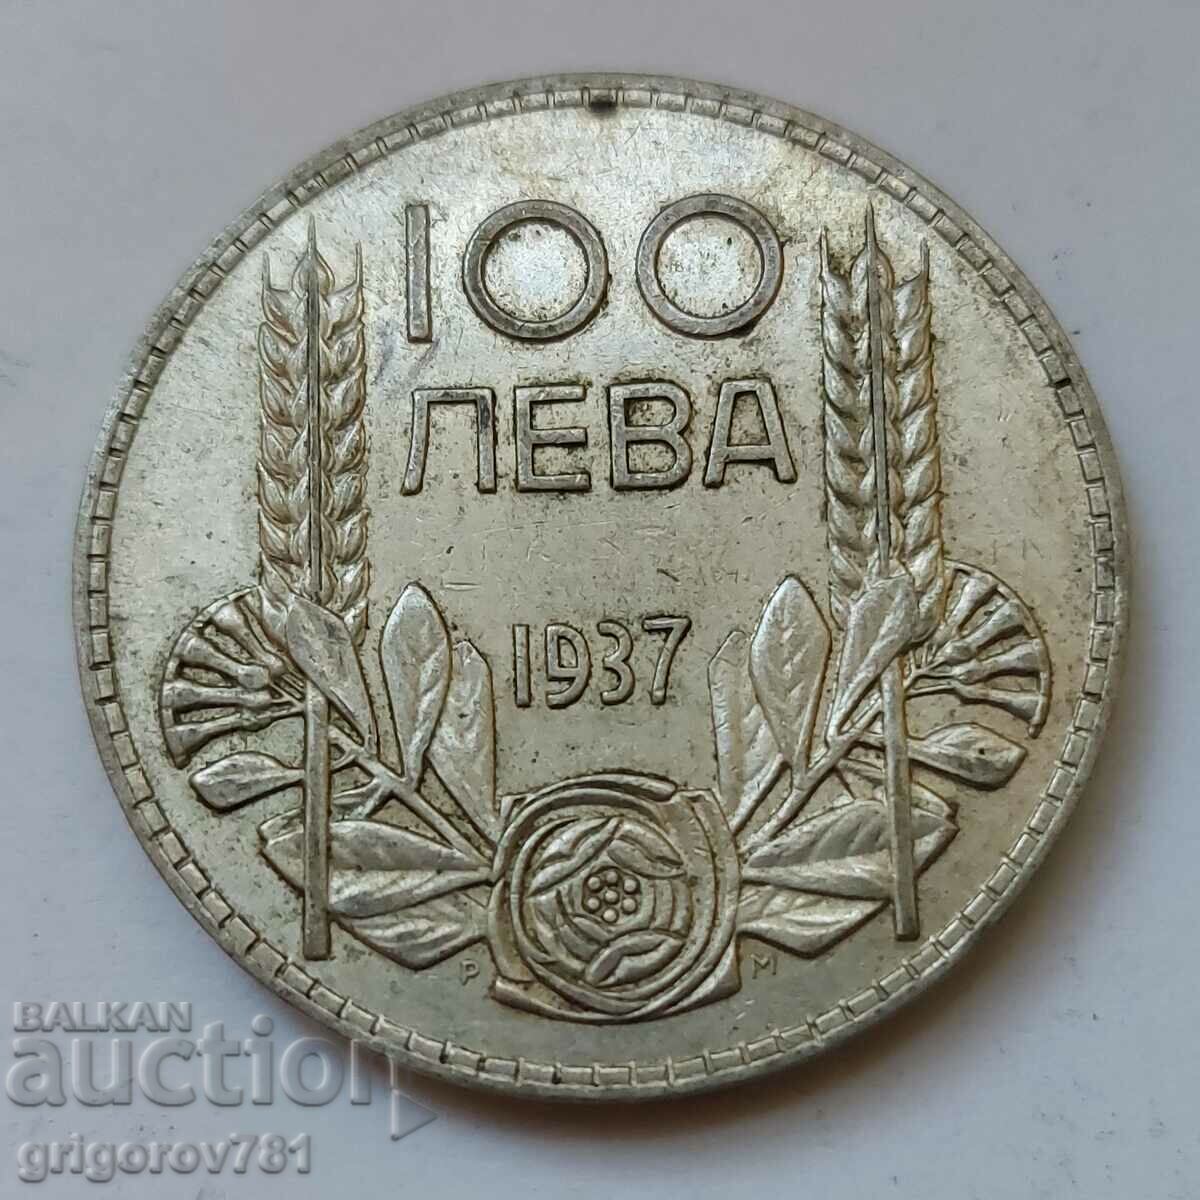 100 leva silver Bulgaria 1937 - silver coin #92